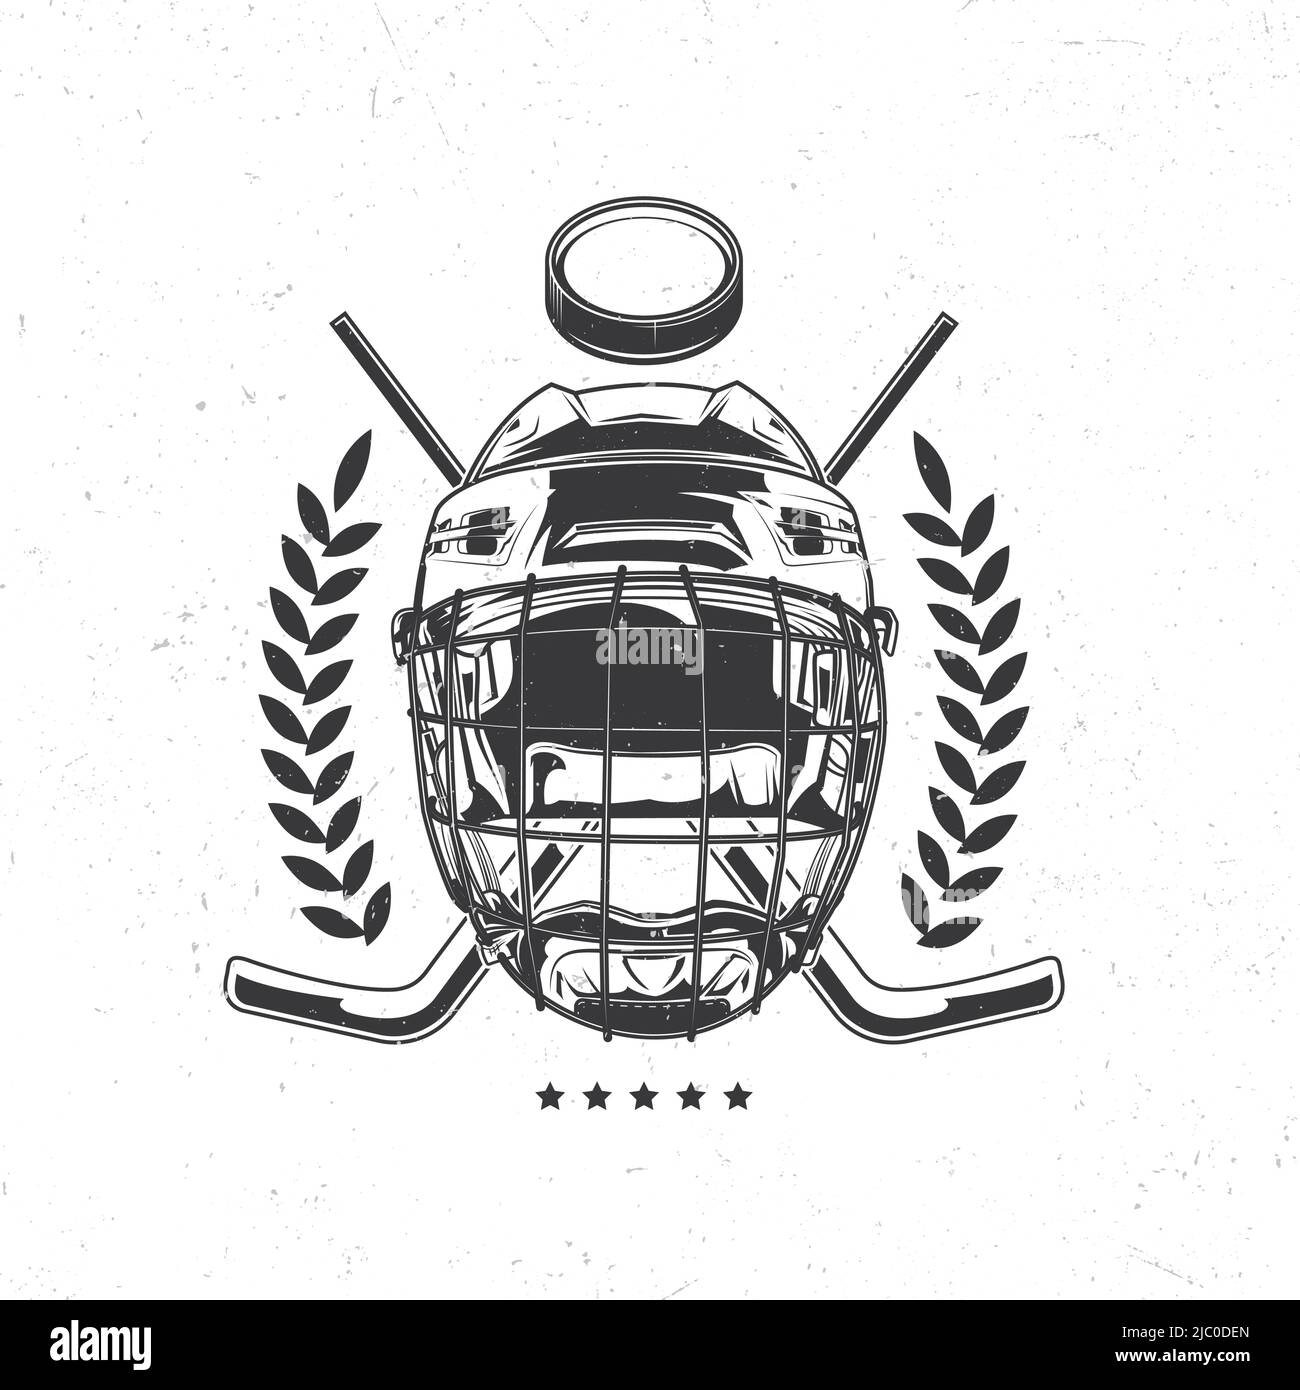 Isoliertes Emblem mit Darstellung von Hockey-Maske, Hockeyschlägern und Puck Stock Vektor